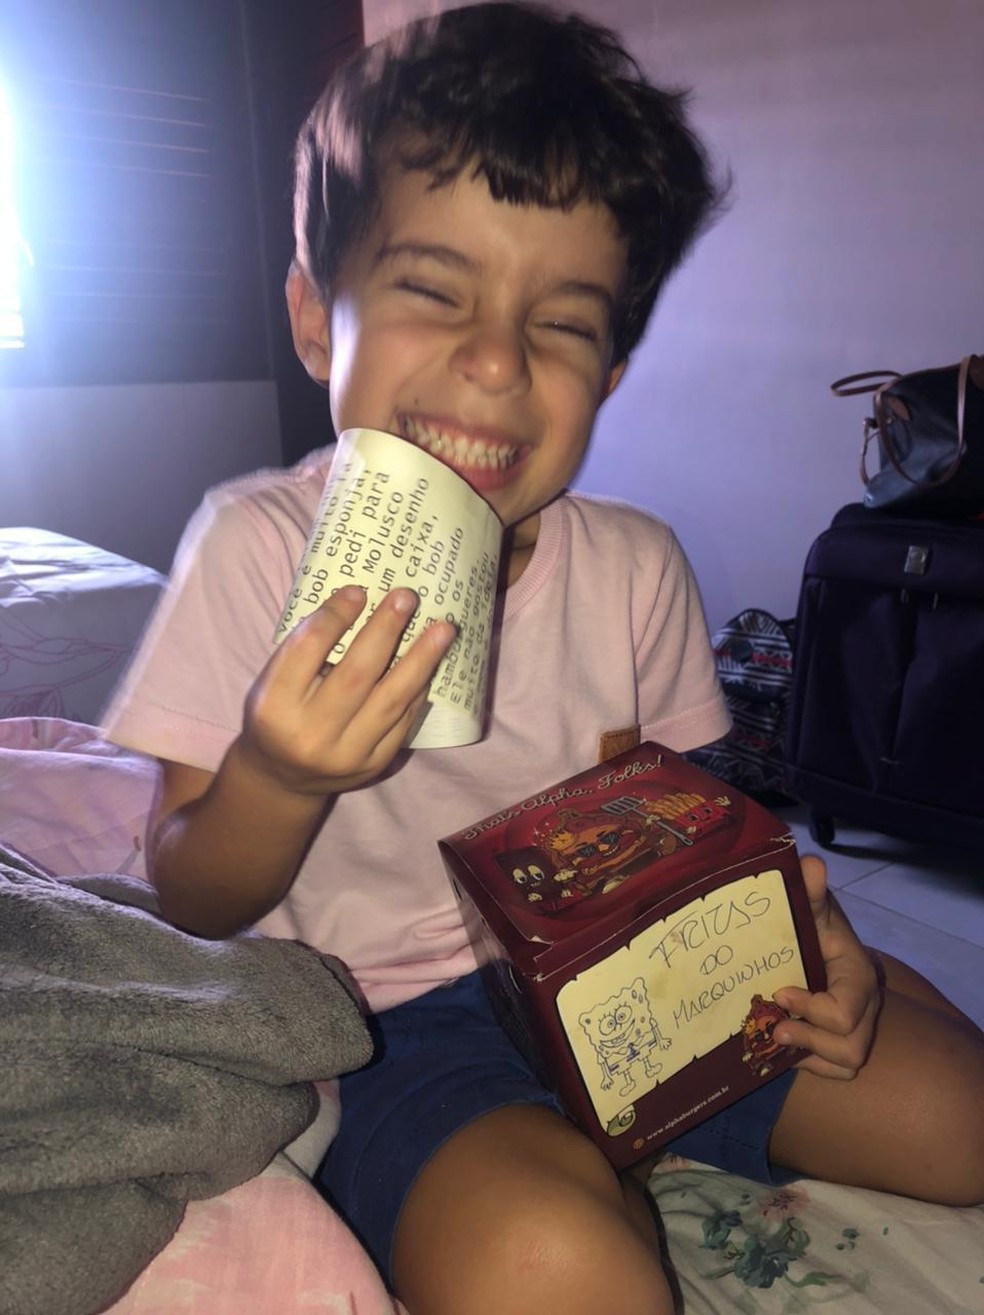 Hamburgueria enviou desenho do Bob esponja e carta do Sirigejo em caixa de lanche para criança em Maceió, Alagoas — Foto: Arquivo Pessoal